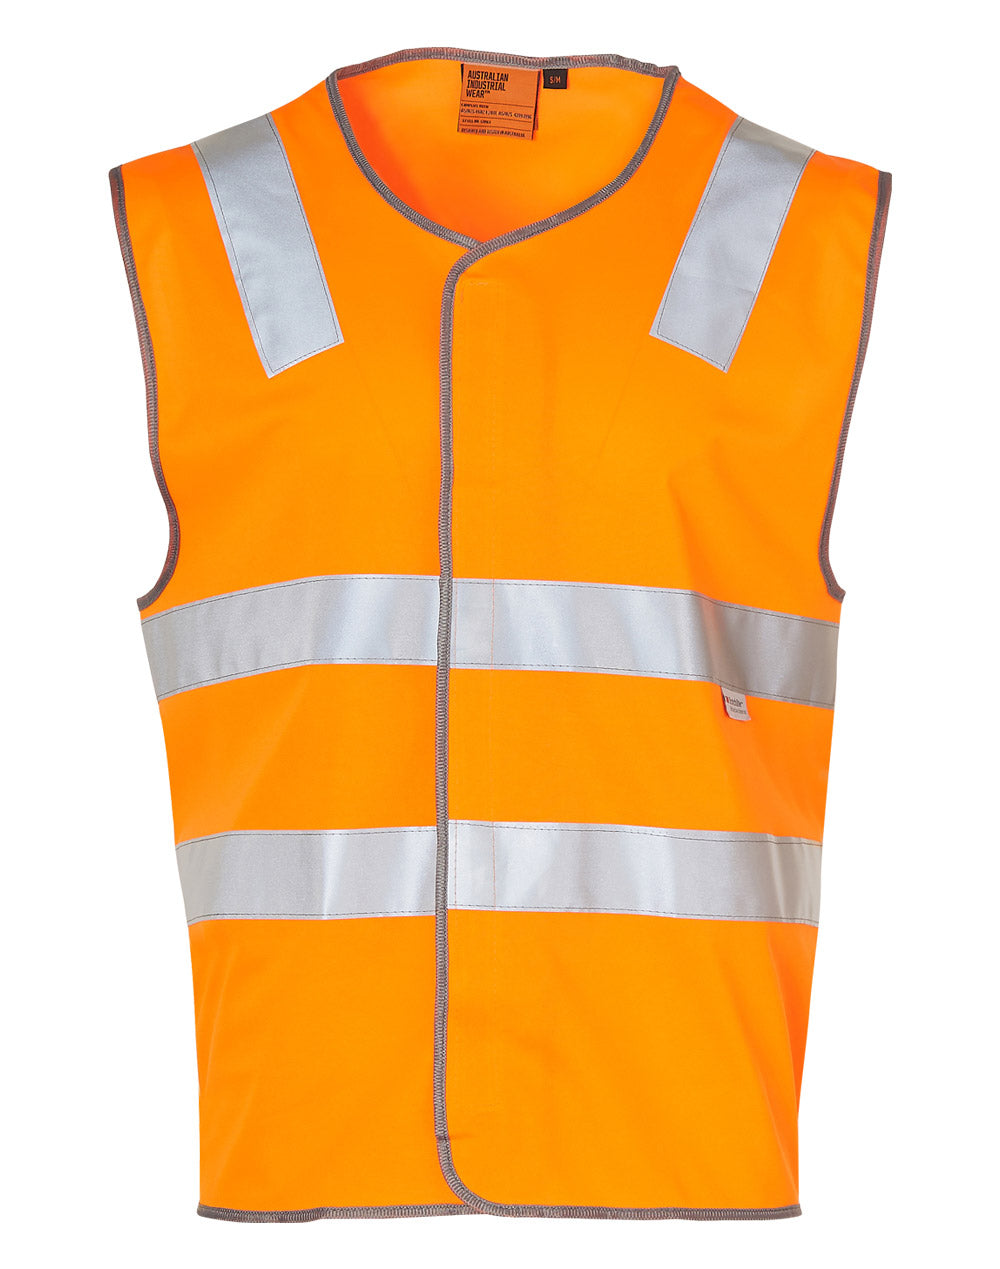 Day Night Use Safety Vest